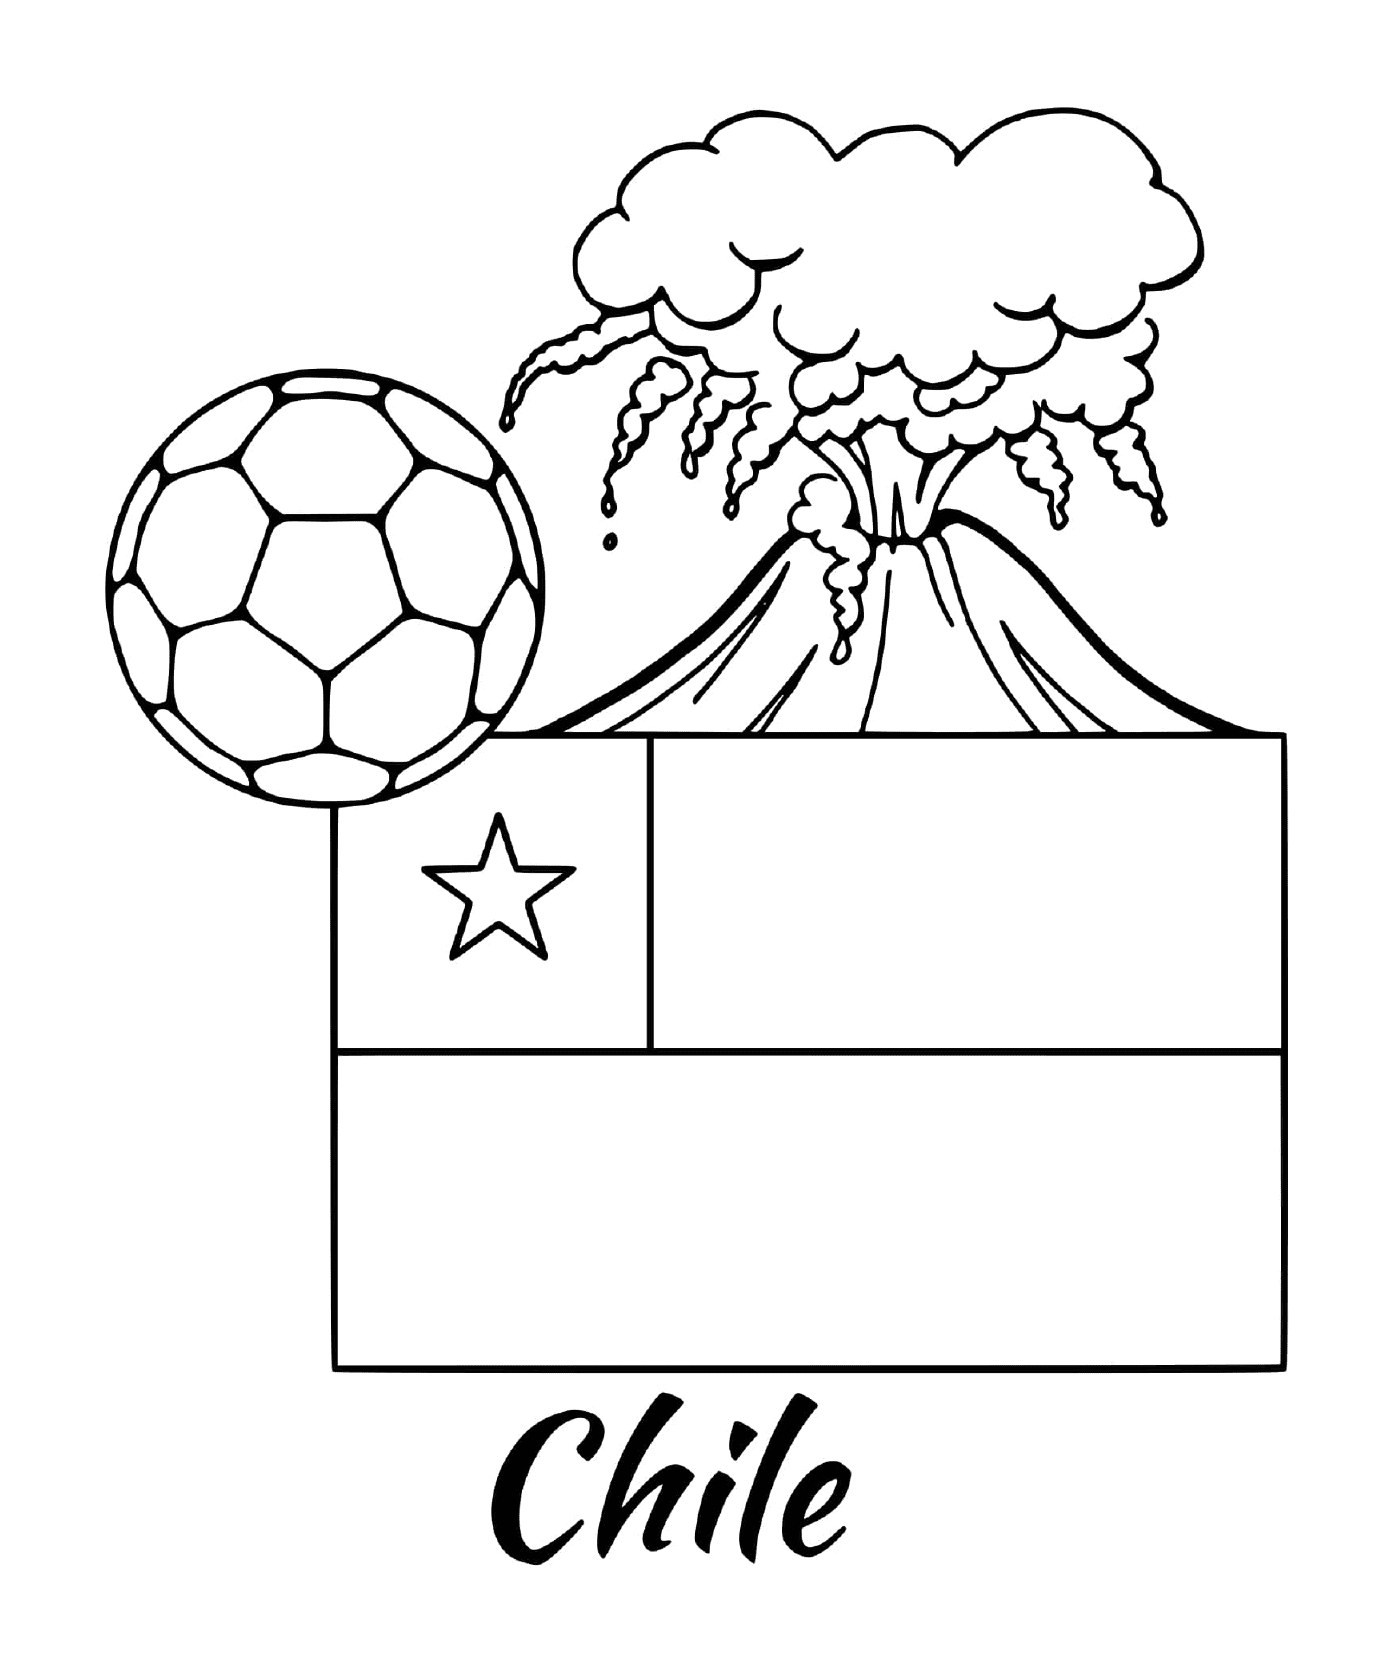  智利国旗,火山 